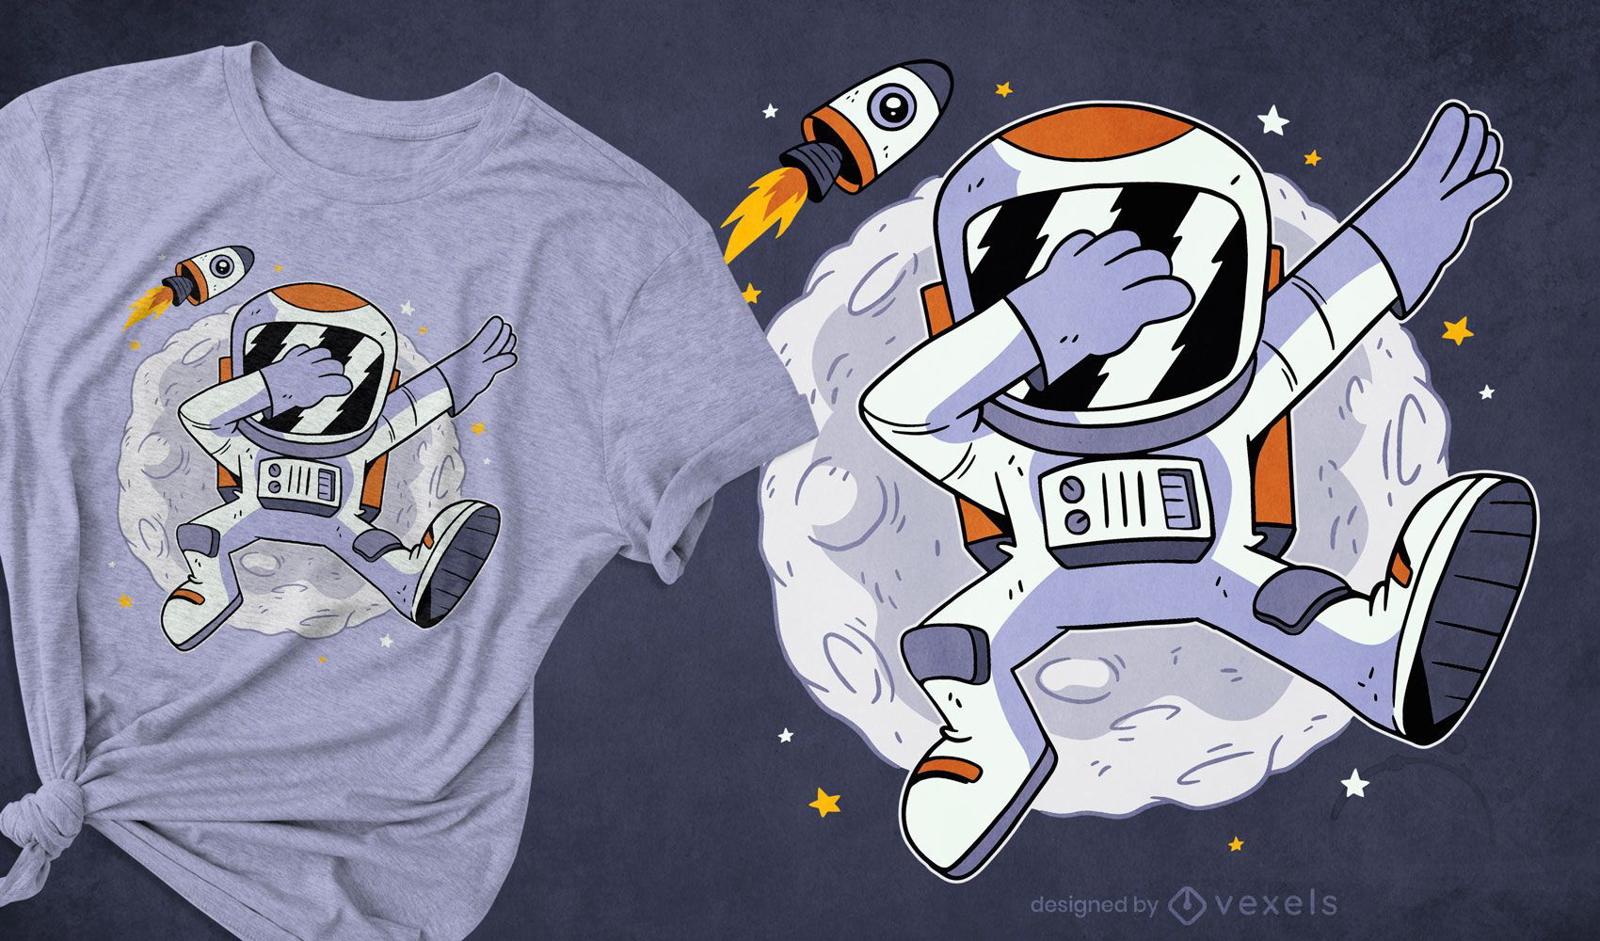 Astronauta dabbing in space dise?o de camiseta.